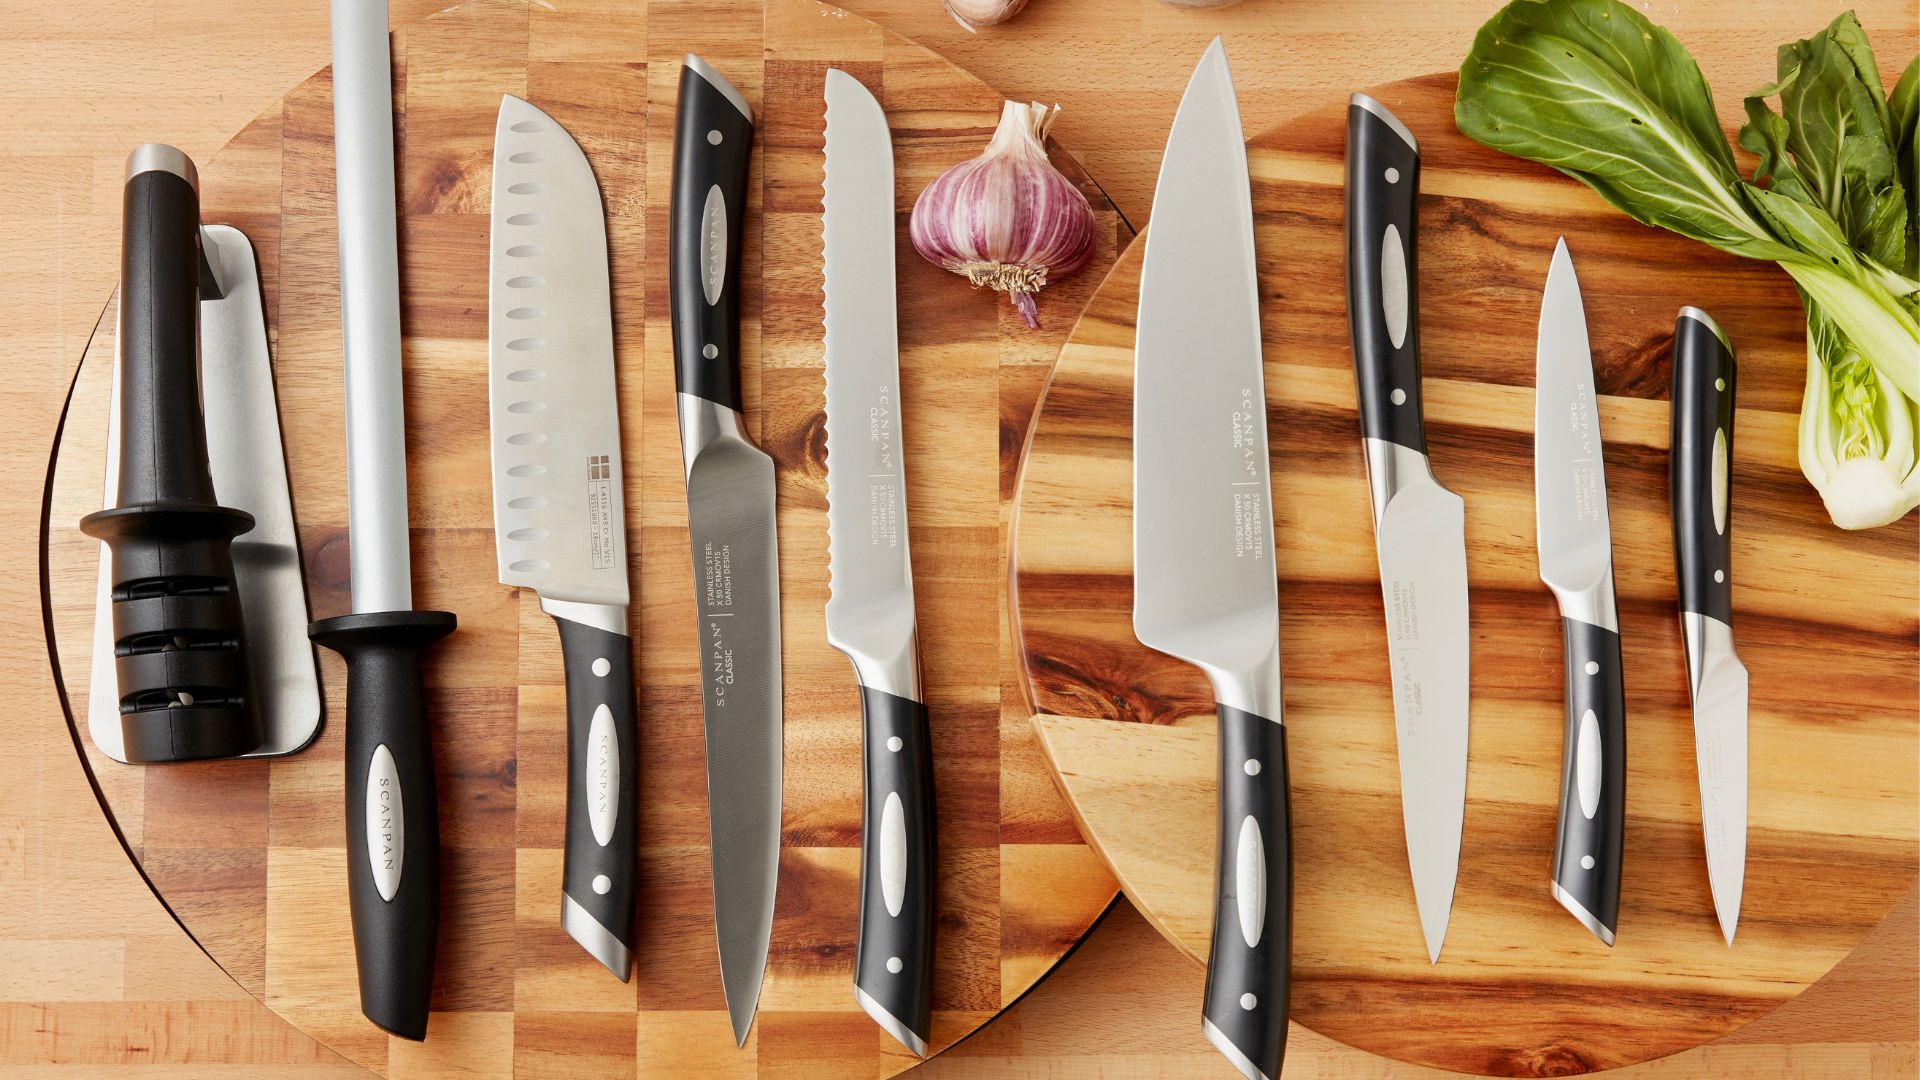 https://www.harrisscarfe.com.au/medias/types-of-knives-kitchen-guide-1.jpg?context=bWFzdGVyfHJvb3R8MzUzNjQyfGltYWdlL2pwZWd8cm9vdC9oYjIvaGQ1LzE0NTUzNzM0NDQ3MTM0L3R5cGVzLW9mLWtuaXZlcy1raXRjaGVuLWd1aWRlLTEuanBnfDNiNDgyNWI4YzBlYjNhZTAxOTgxZGFhNzJkNGExOTgyMzRhYjhlZTExOTcyOTg3ZGQzNzQ4NDZkMGZjZGY2ZWI